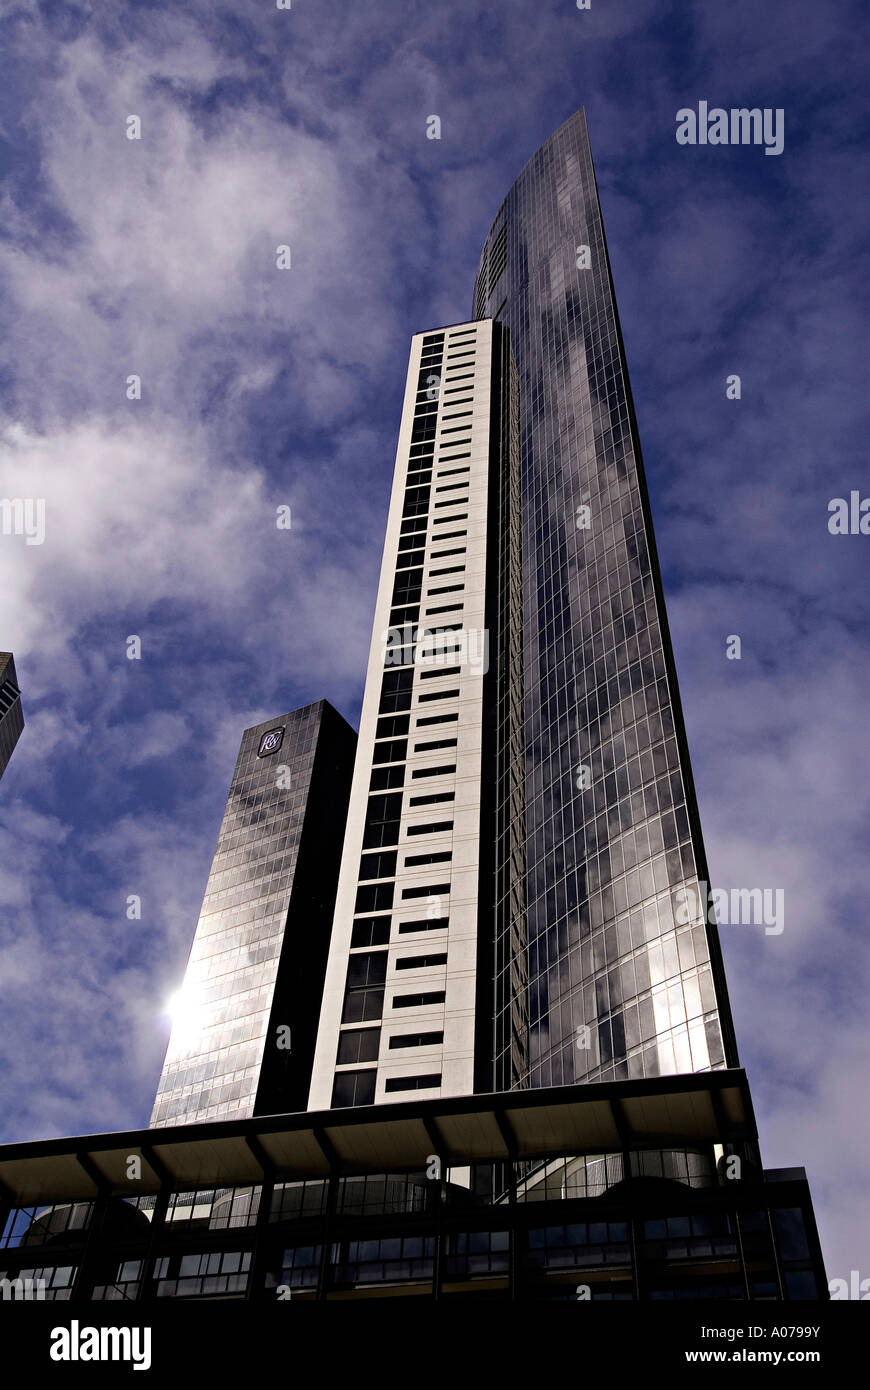 skyscraper in melbourne Stock Photo